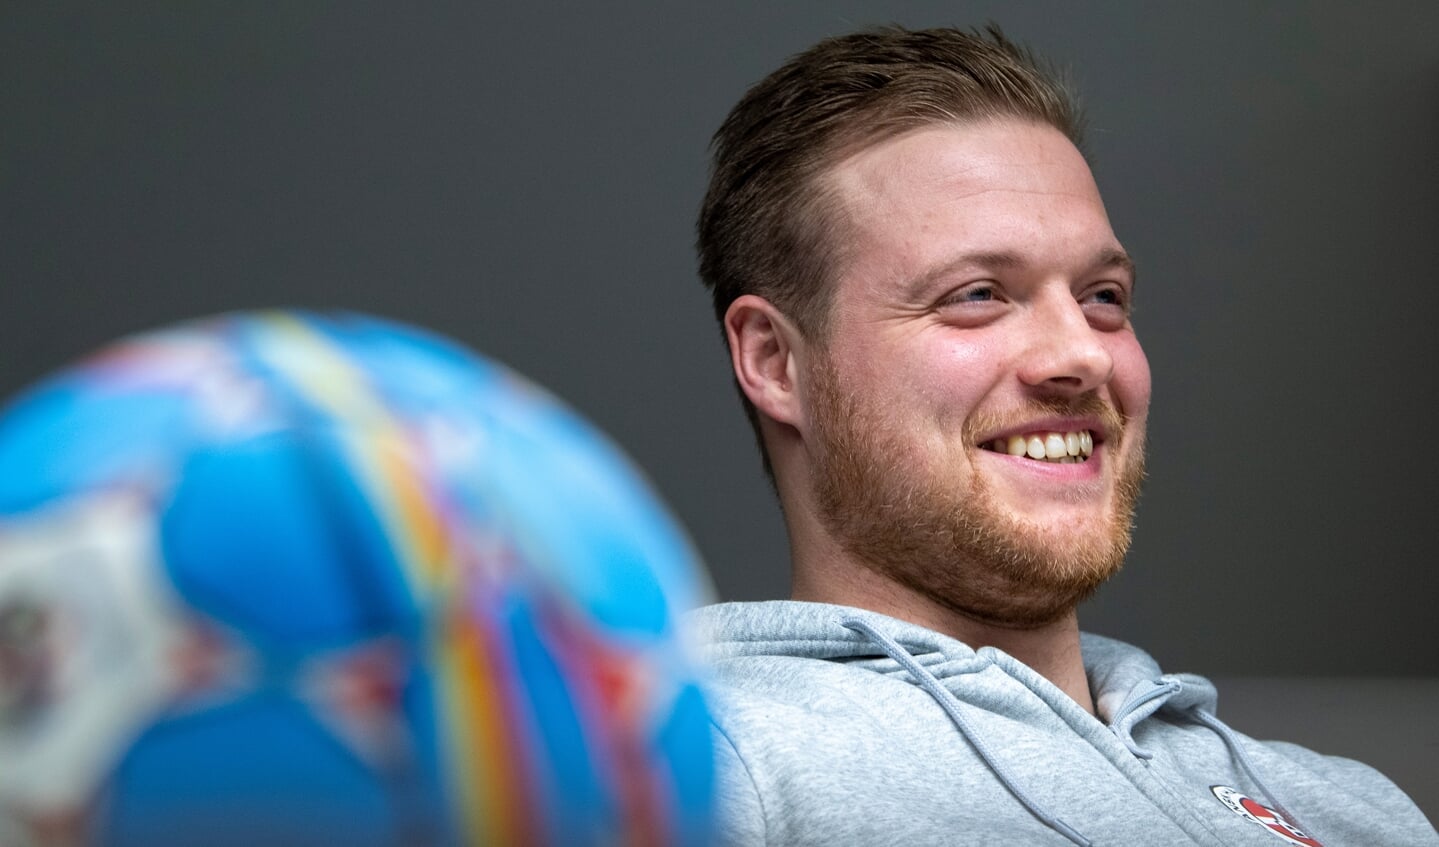 Tjark Desler wird ab Sommer ins Management des DHK Flensborg einsteigen und seine Karriere als Spieler beenden.